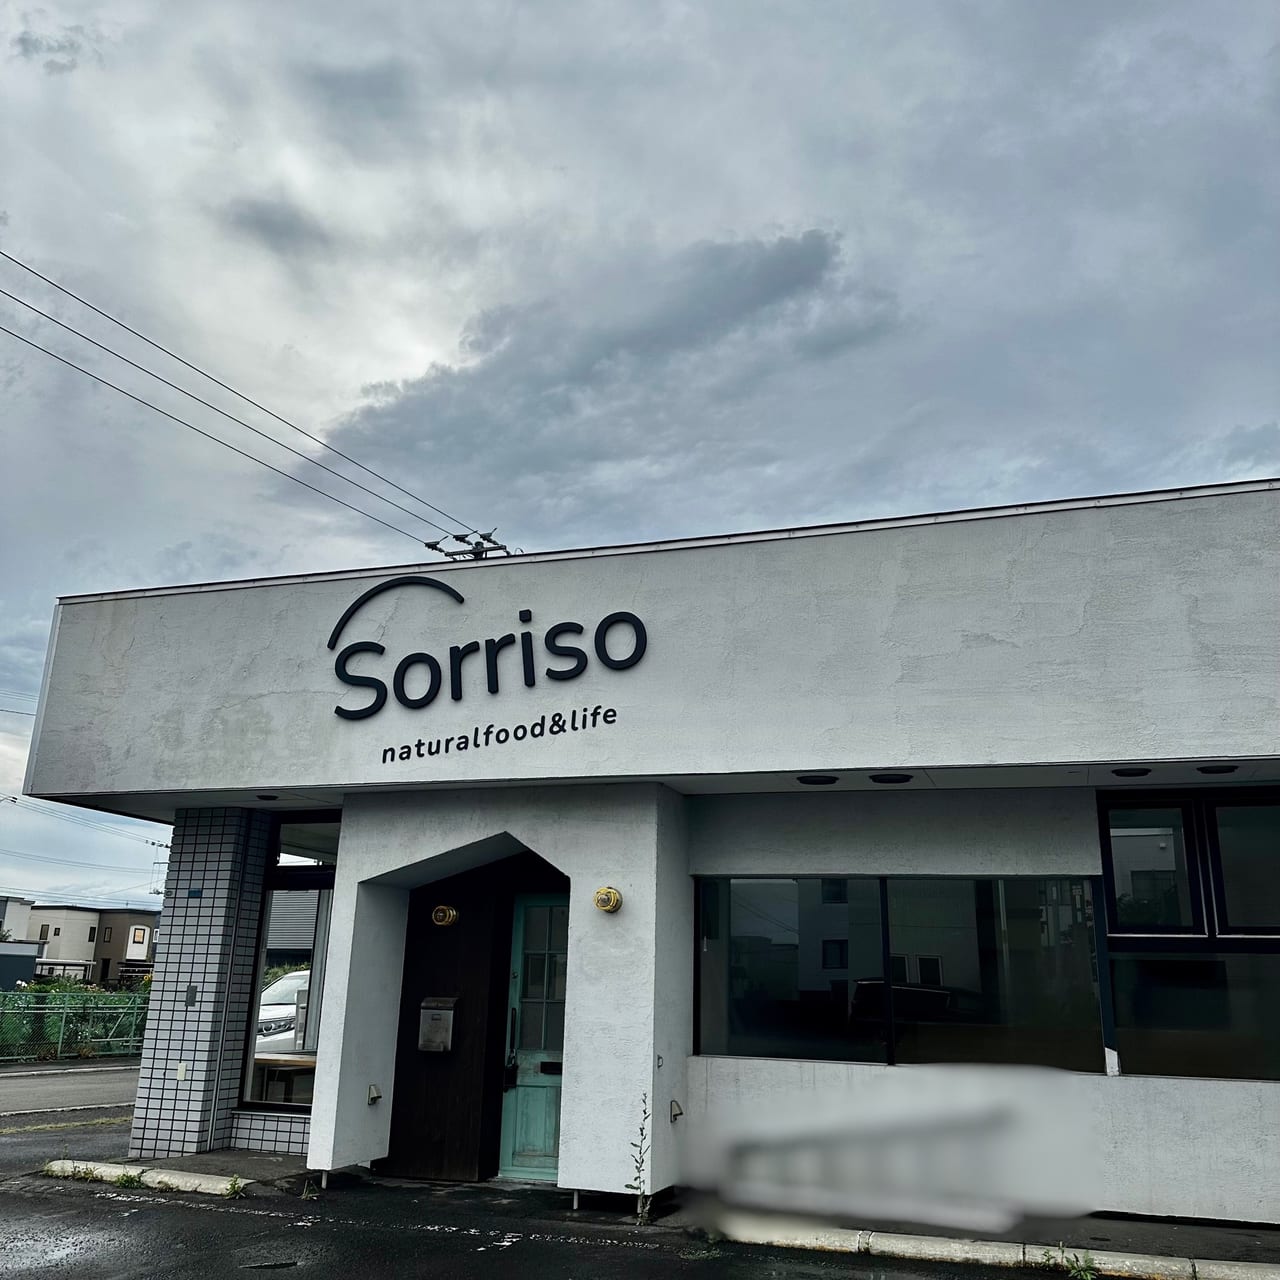 食を通じてみんなが笑顔になるショップ「Sorriso（ソリソ）」が東苗穂にオープンします!